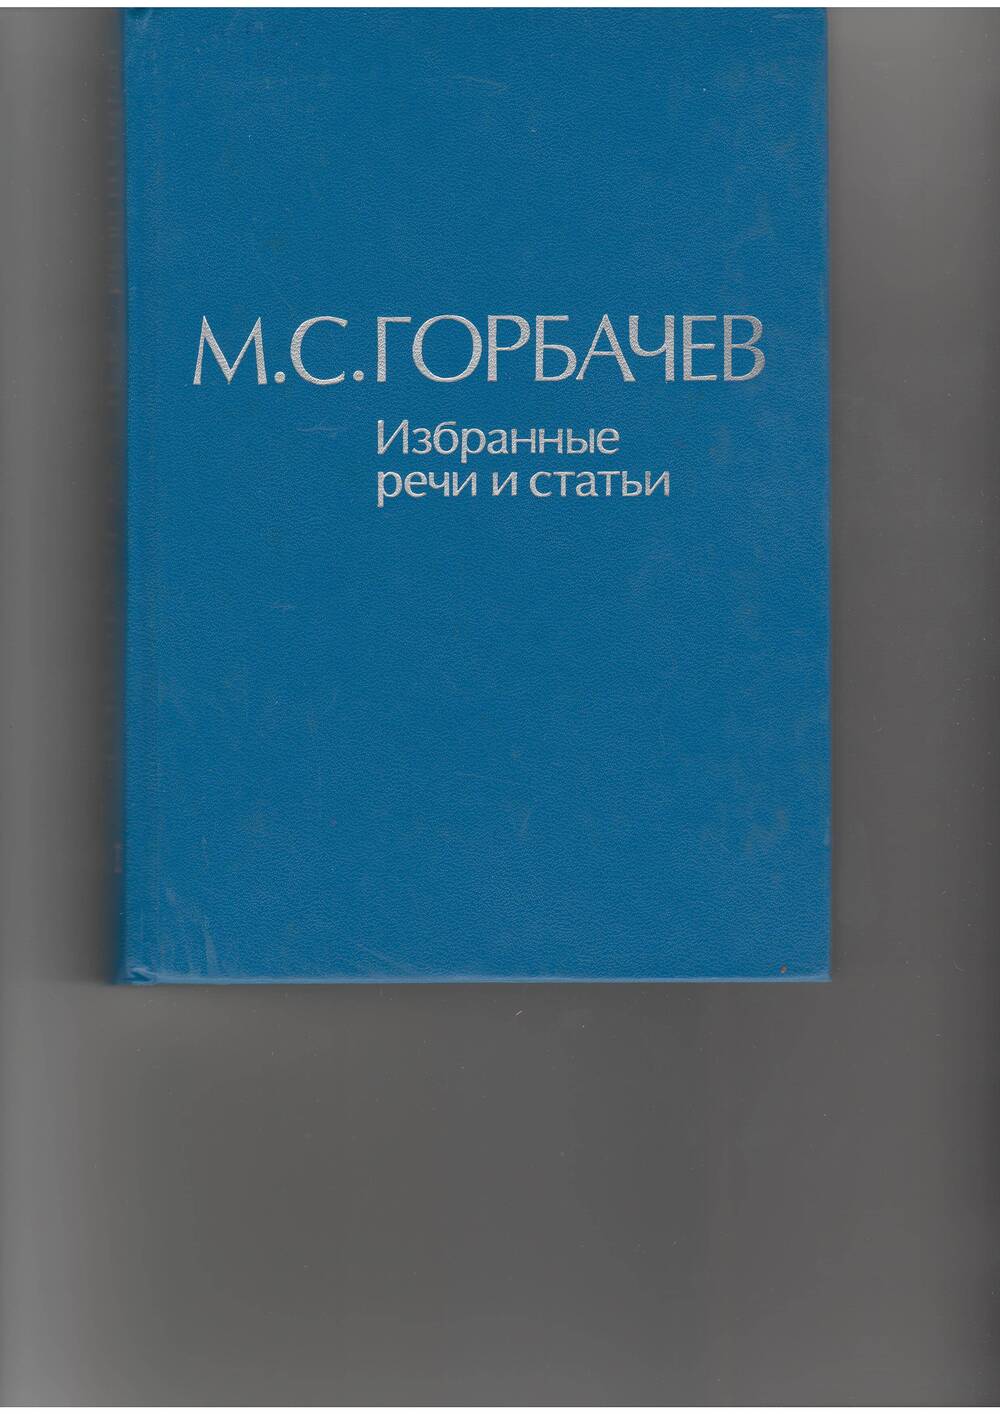 книга  Горбачев М. С. Избранные речи и статьи.т.5. - М: Наука,1987.